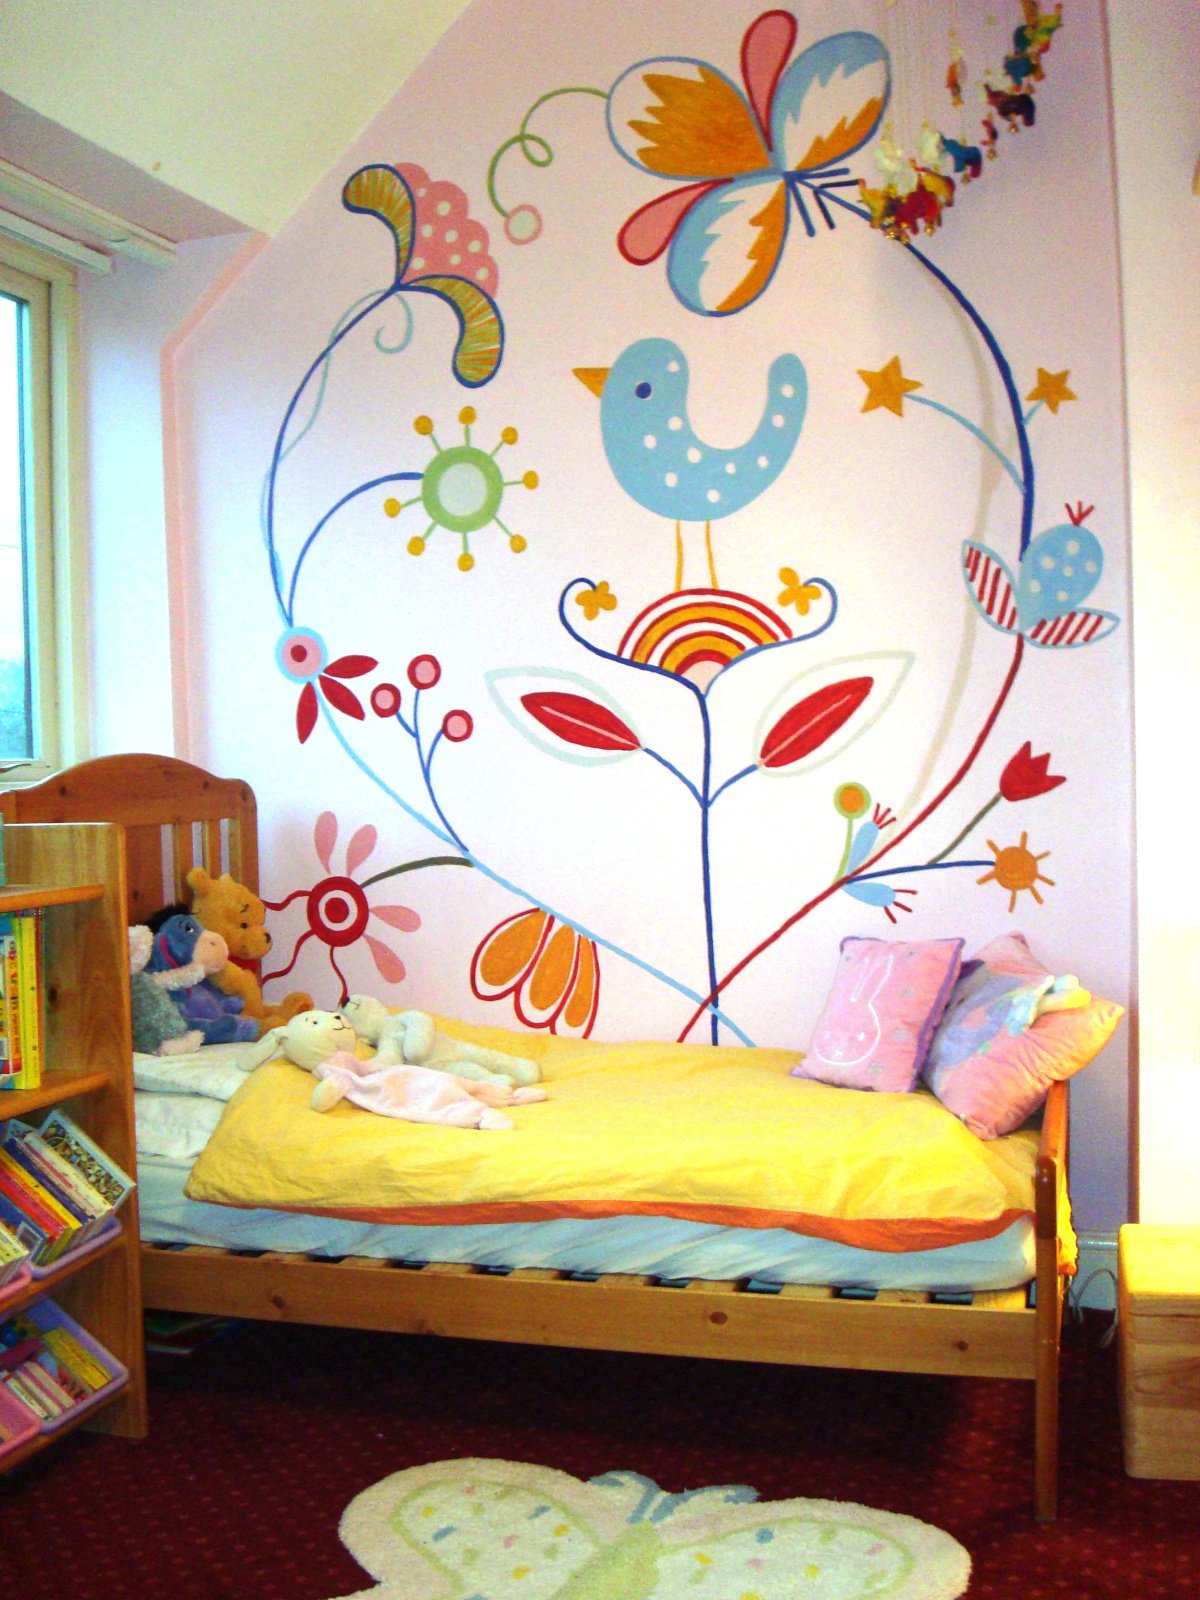 оформление стены в детской комнате у кровати